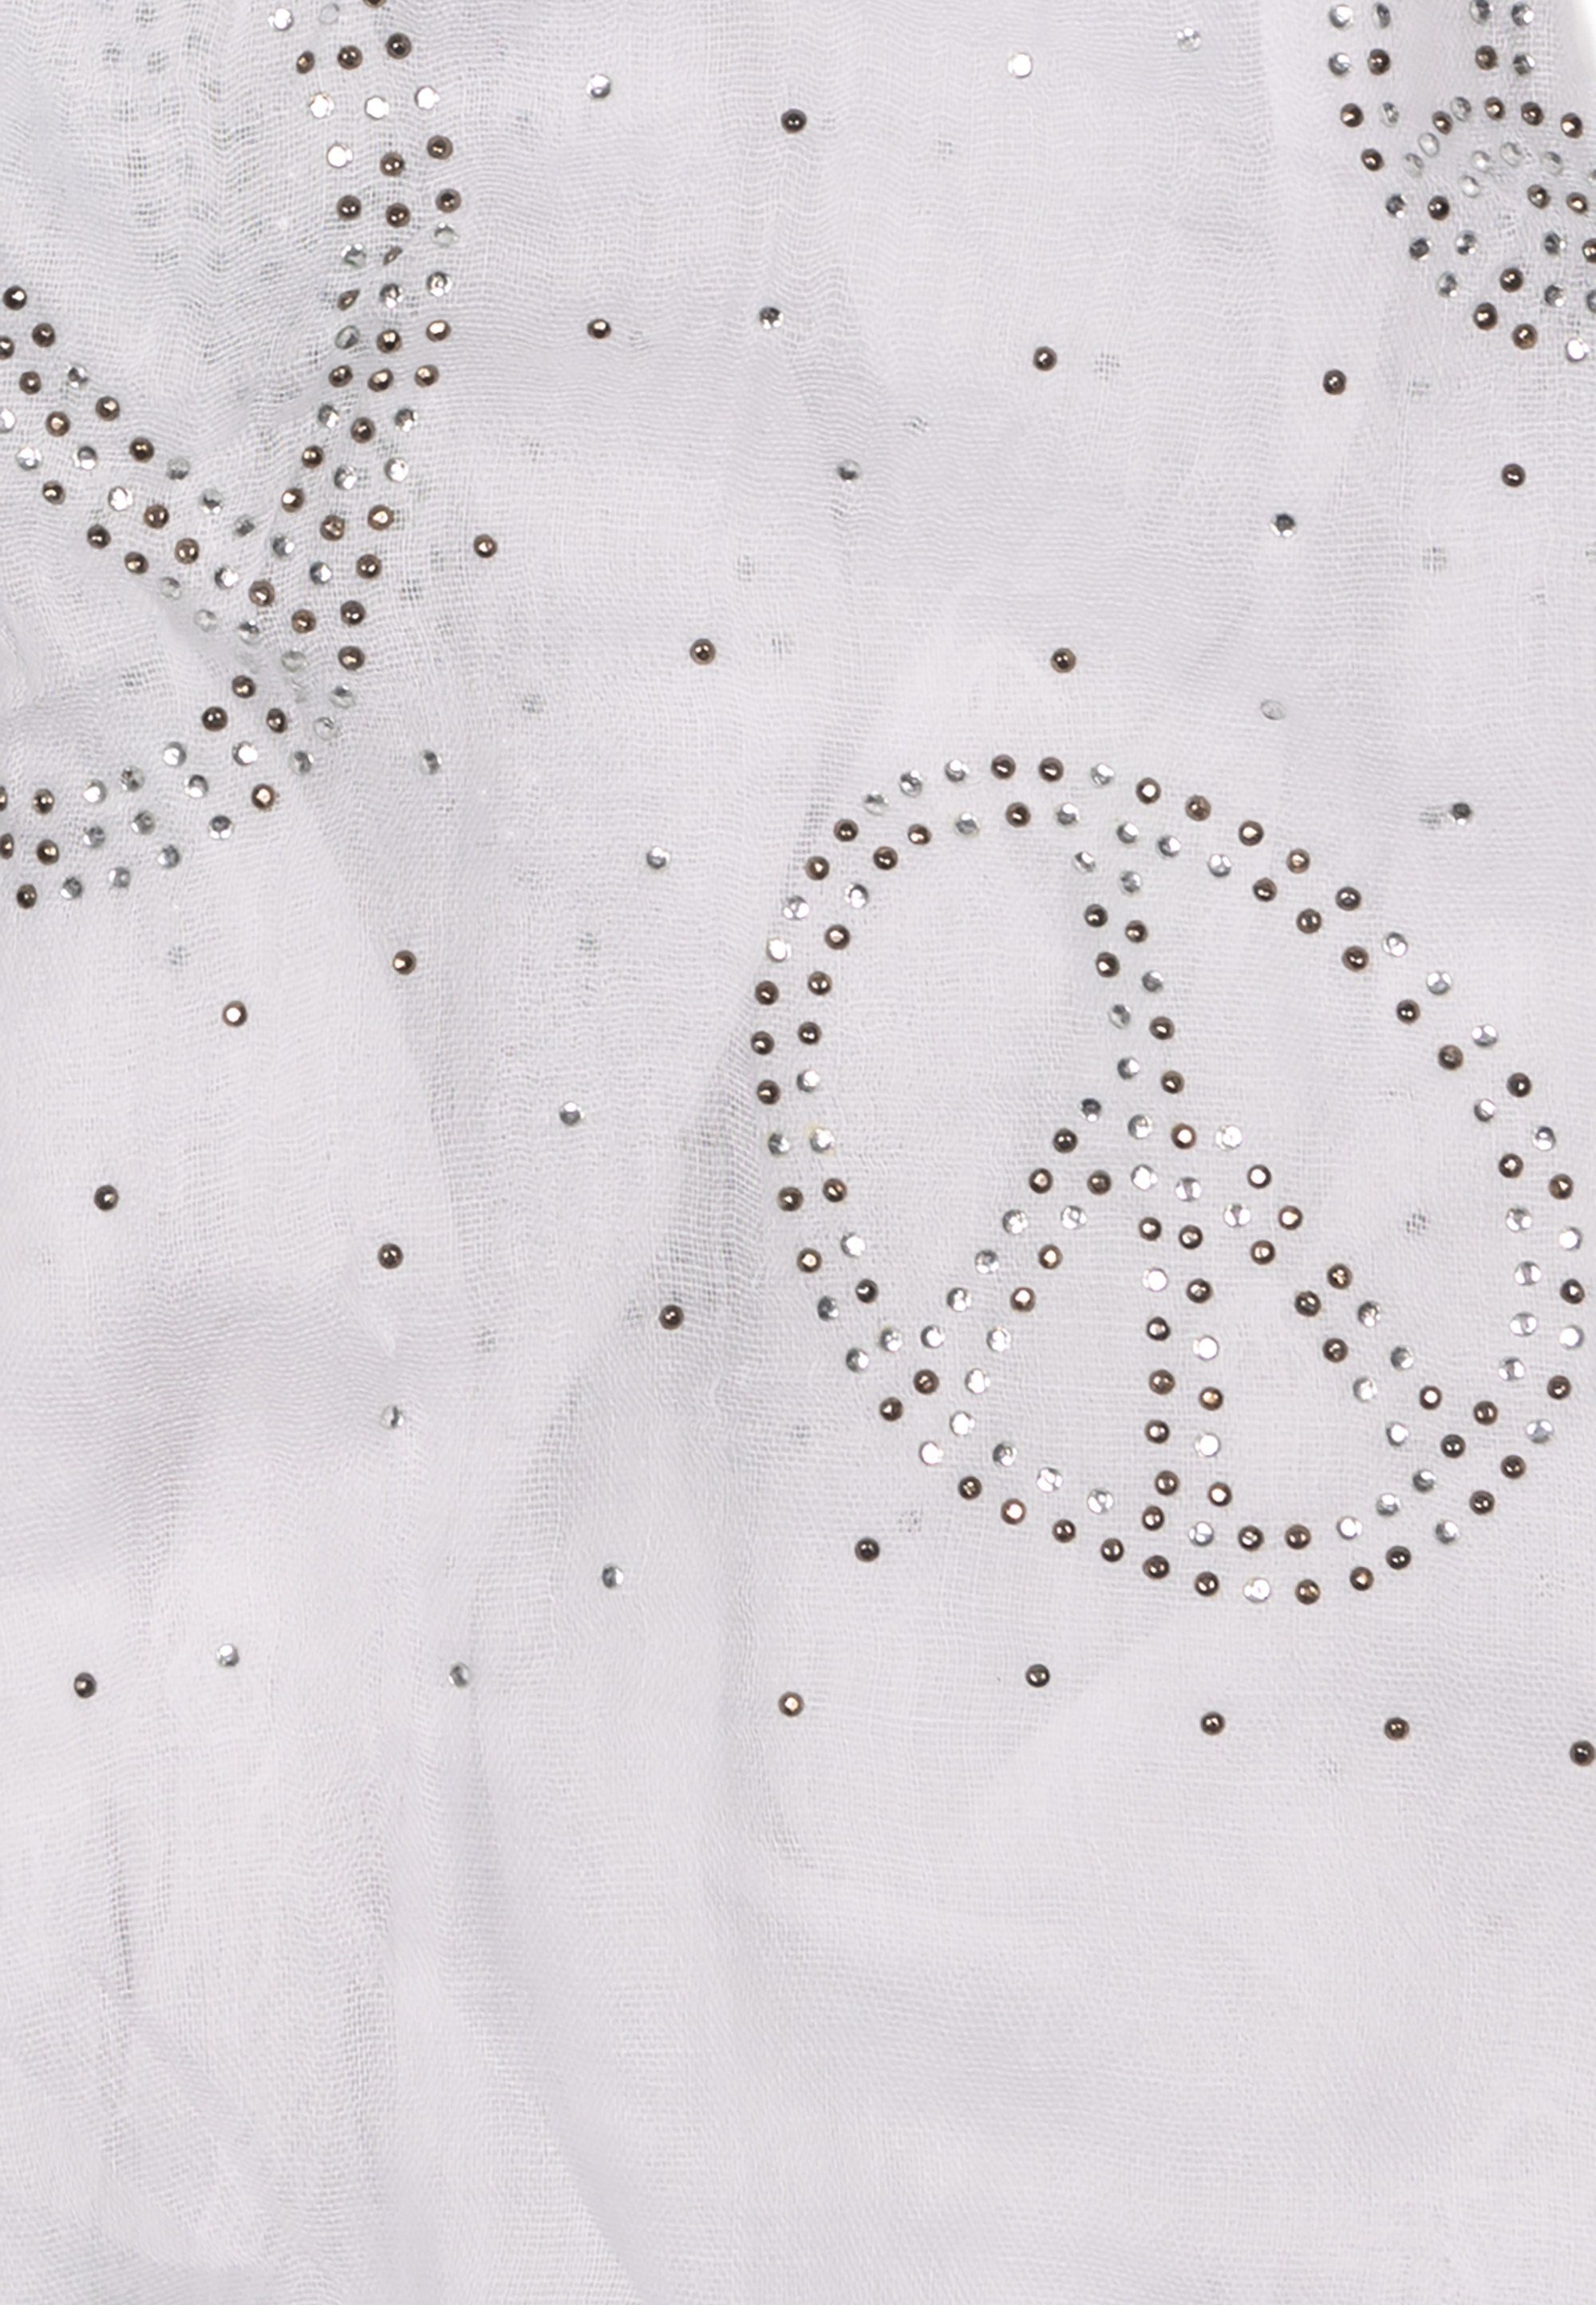 mit zahlreichen glitzernden Straßsteinen luftig Cassandra Schal Friedenssymbolen "Peace", gewebt, Accessoires aus leicht